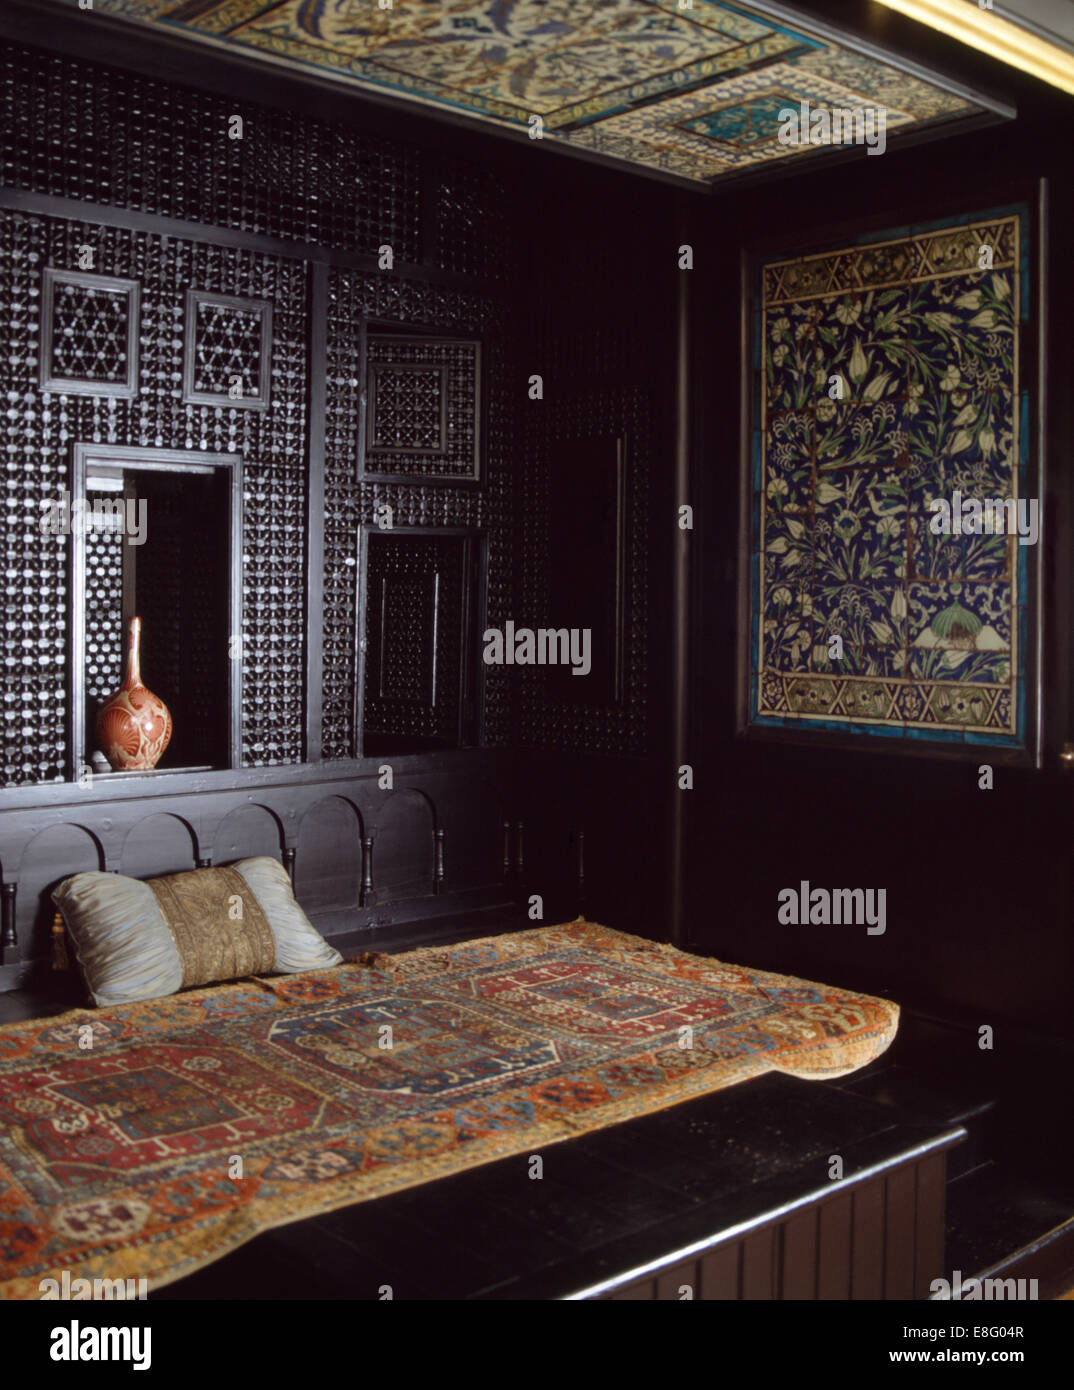 Alte orientalische Wolldecke auf Bett im marokkanischen Stil Schlafzimmer  Stockfotografie - Alamy